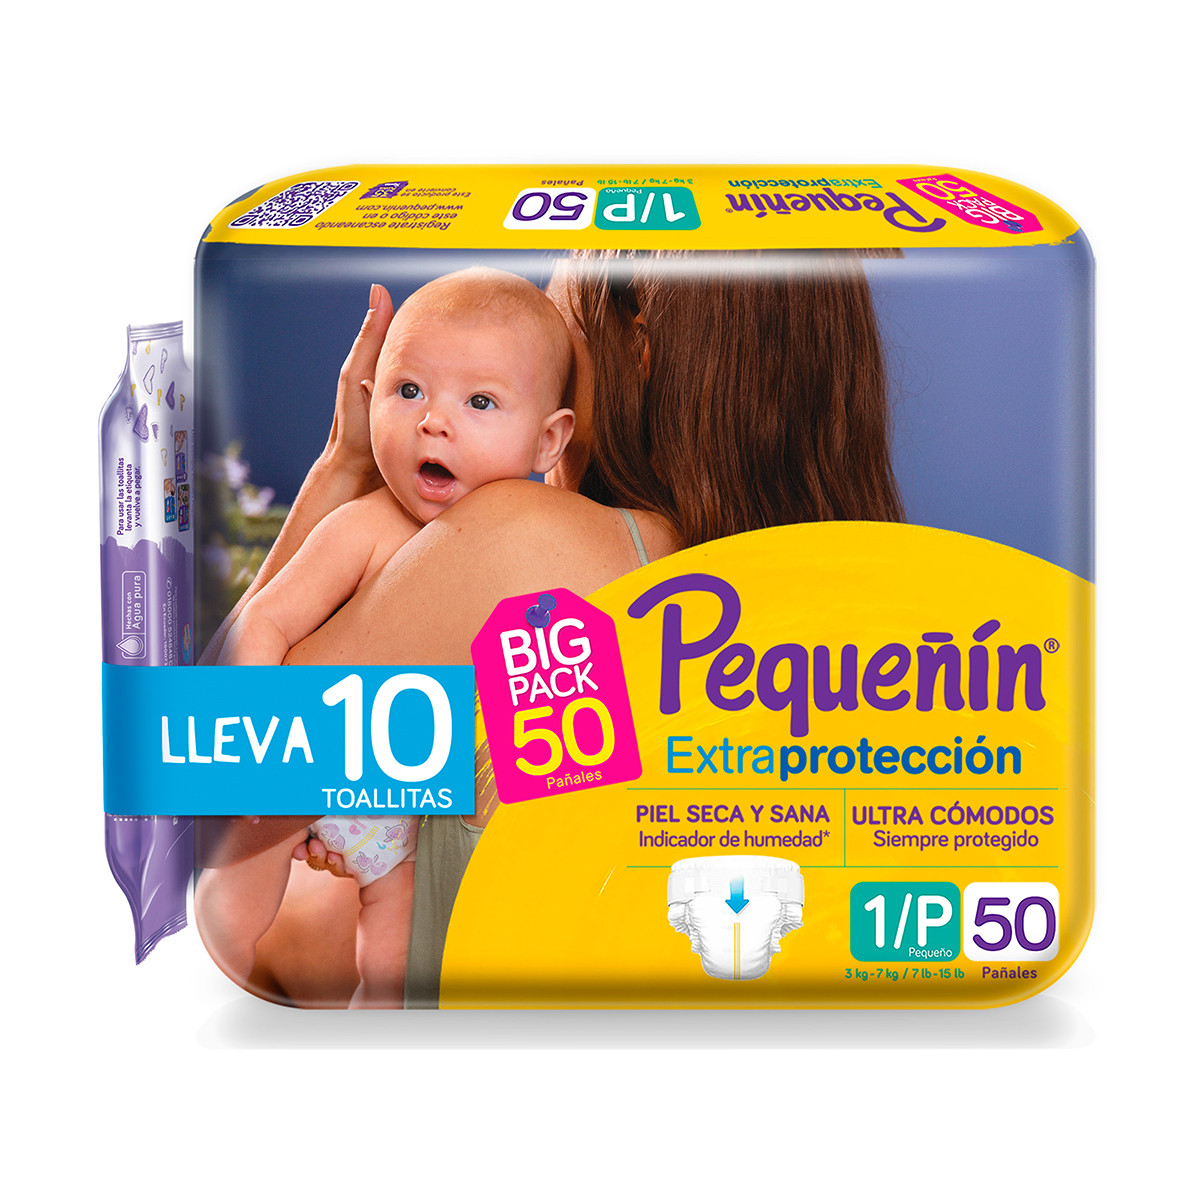 Imagen inactiva Pañales Pequeñín Extraprotección Etapa 1 x 50 und + Toallitas Recién Nacido x 10 und